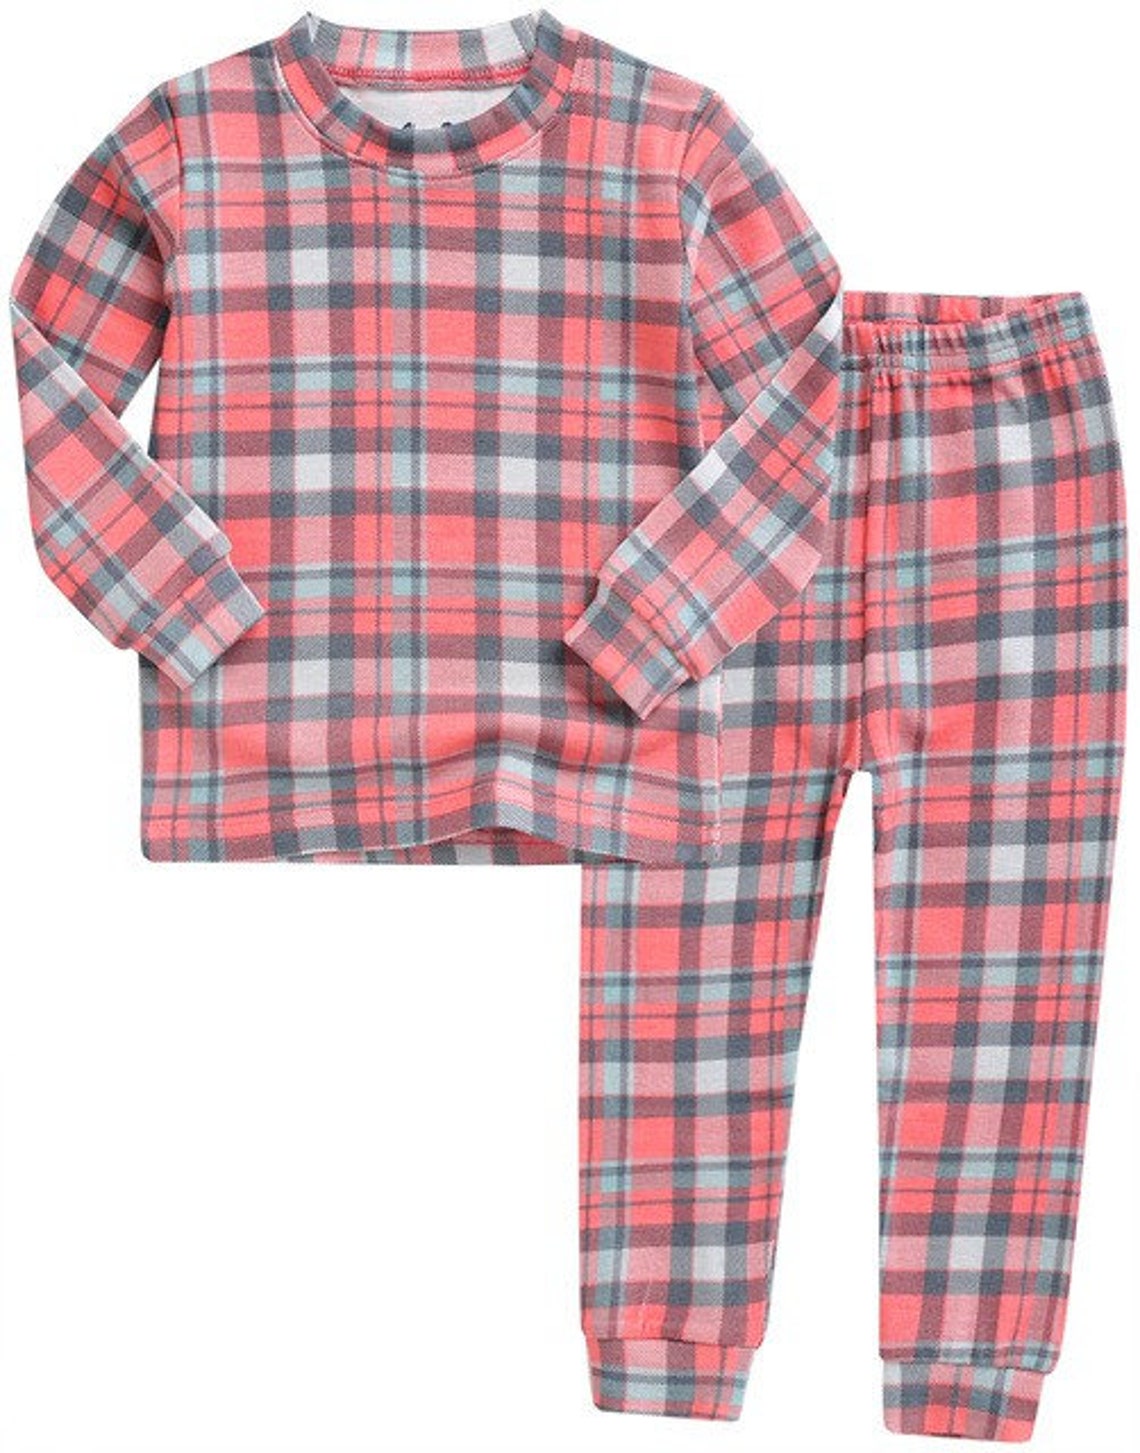 Tartan Check Indi Pink Pajamas Baby Modal Pajama Set Toddler | Etsy